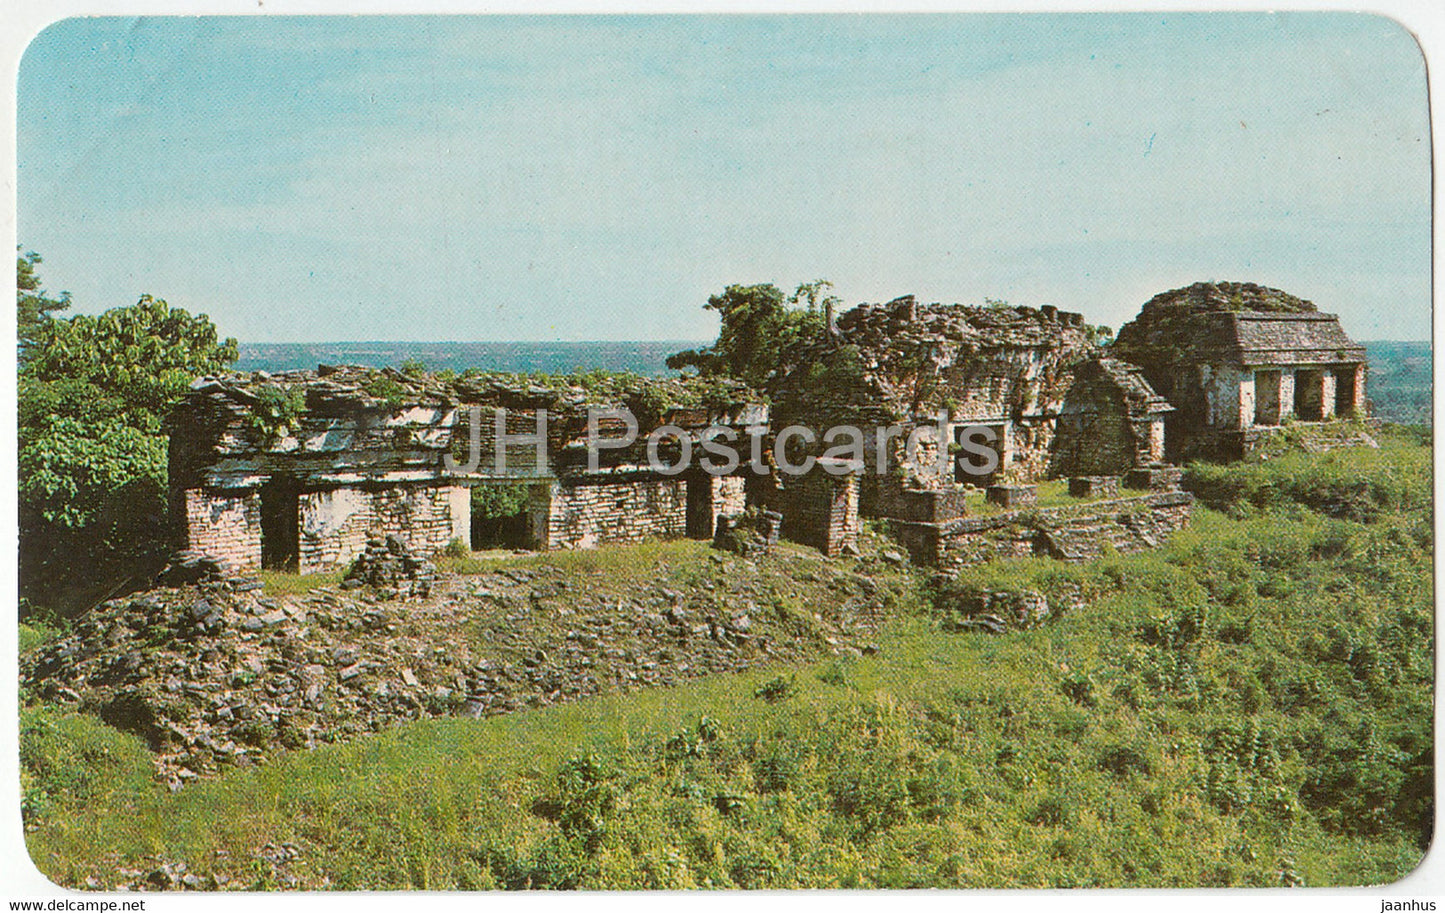 The Count's Temple - Palenque Ruins - El Templo del Conde - Ruinas de Palenque - Mexico - unused - JH Postcards